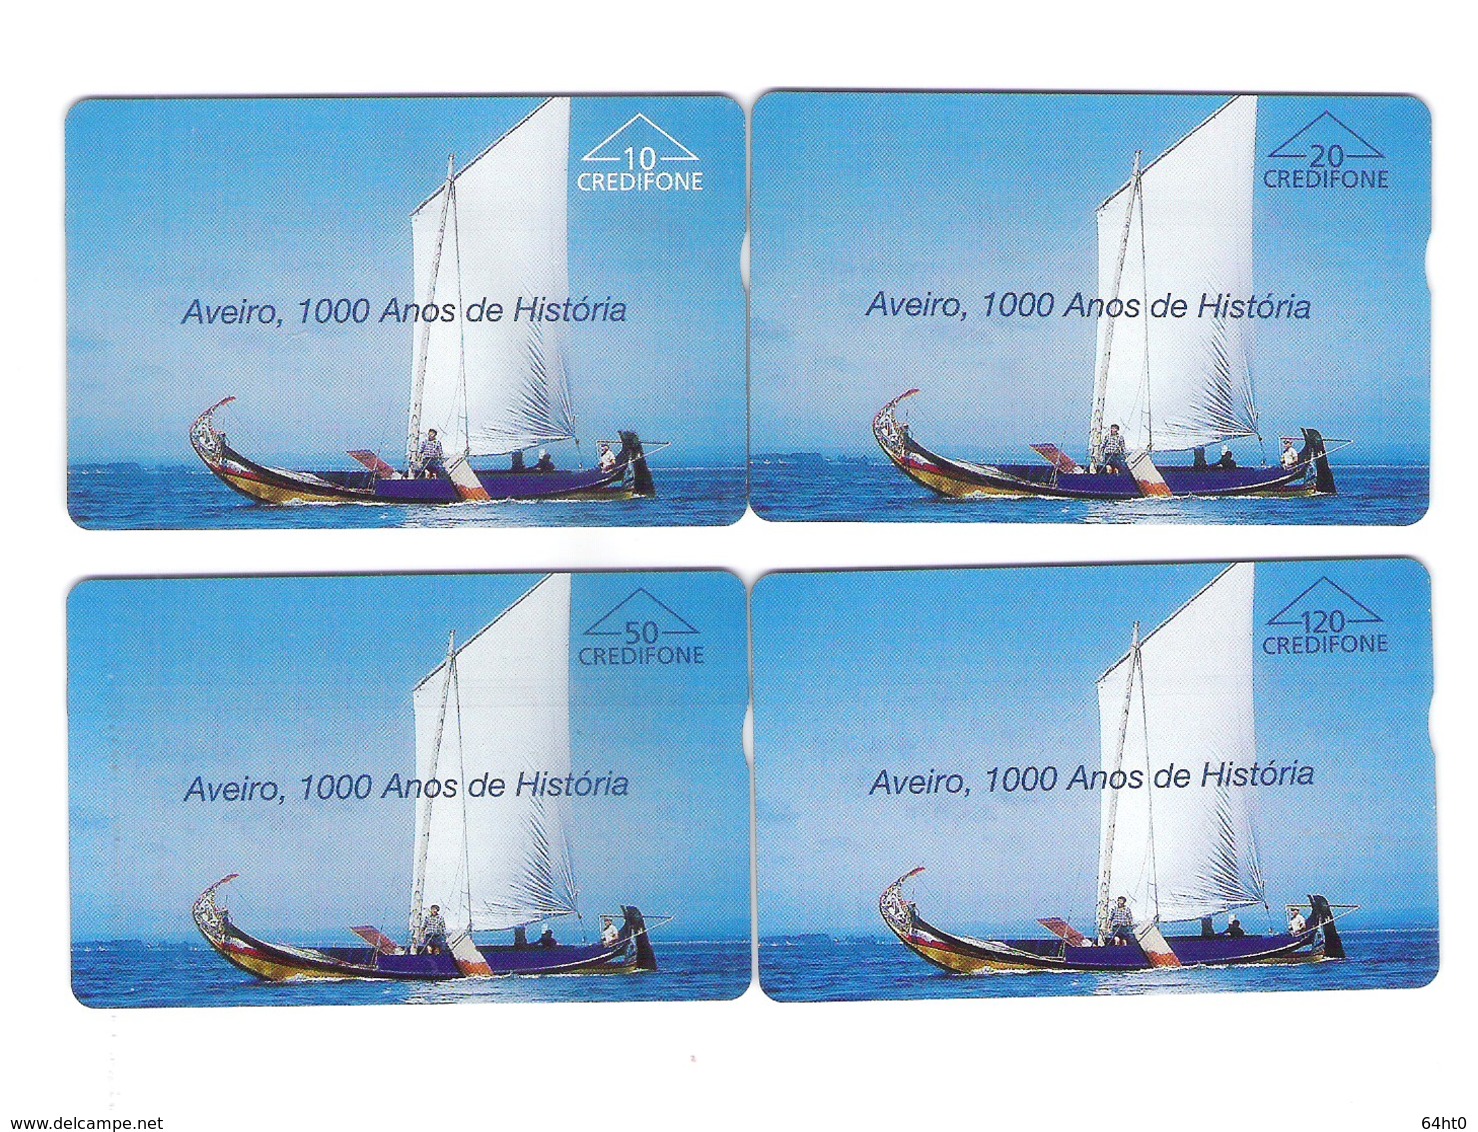 SERIE OF 4 OPTICO CARDS PORTUGAL "AVEIRO 1000 ANOS DE HISTÓRIA" EX: 8.000 - NEW/NOT USED - Portugal